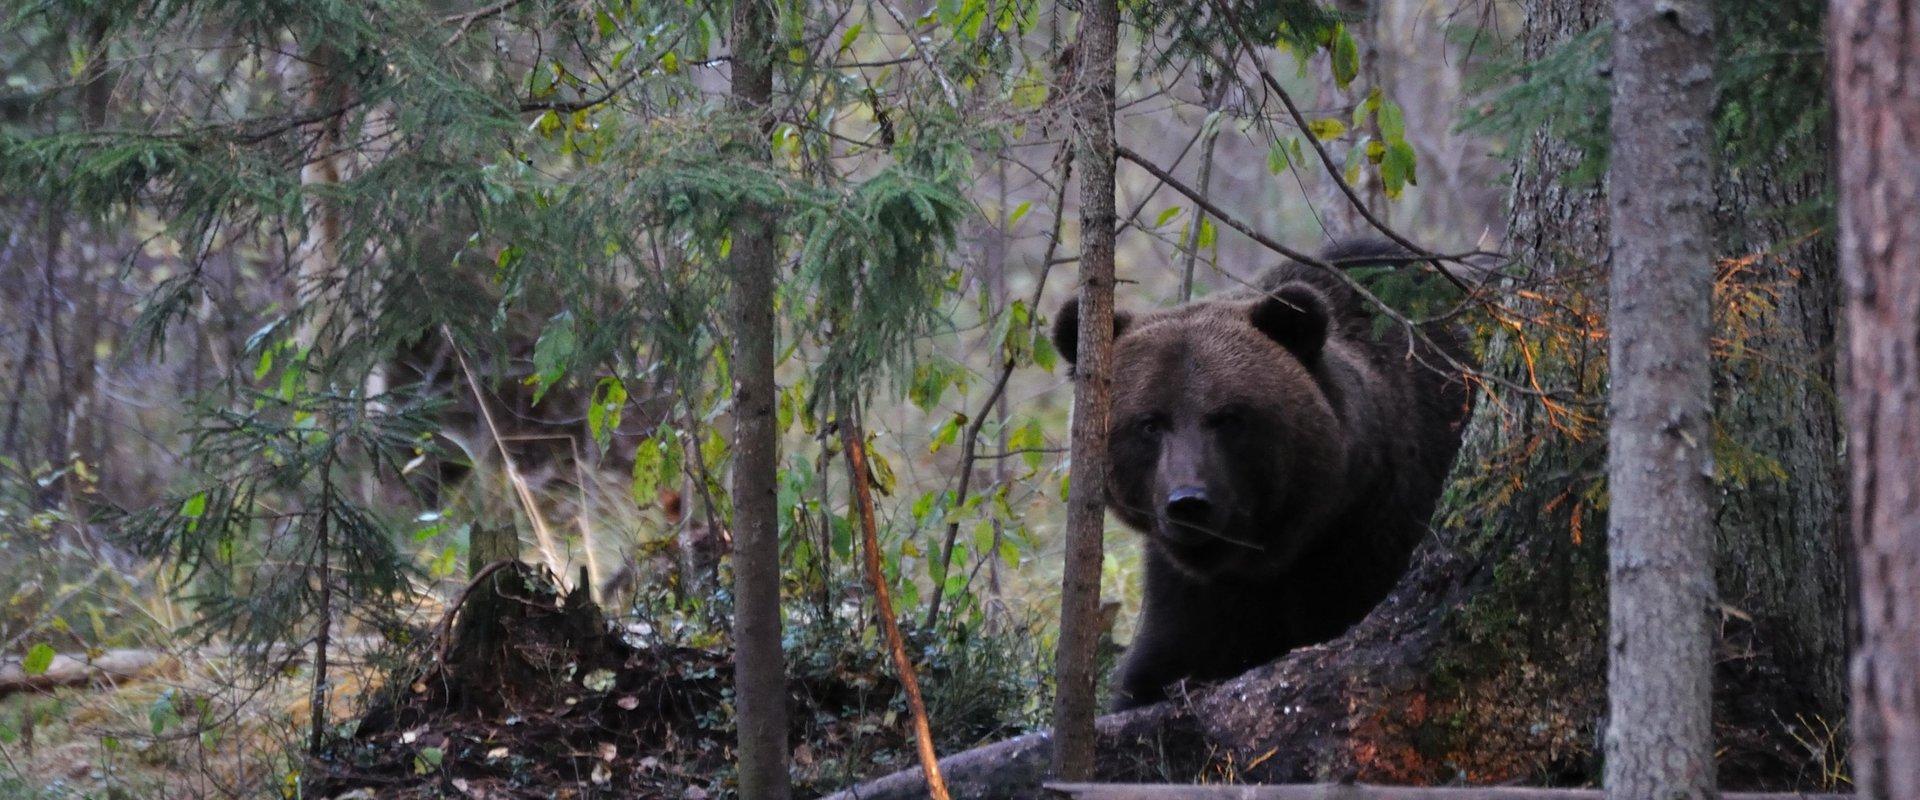 Für Tierfotografen: Bären- und Wildtierbeobachtungshütte in Alutaguse